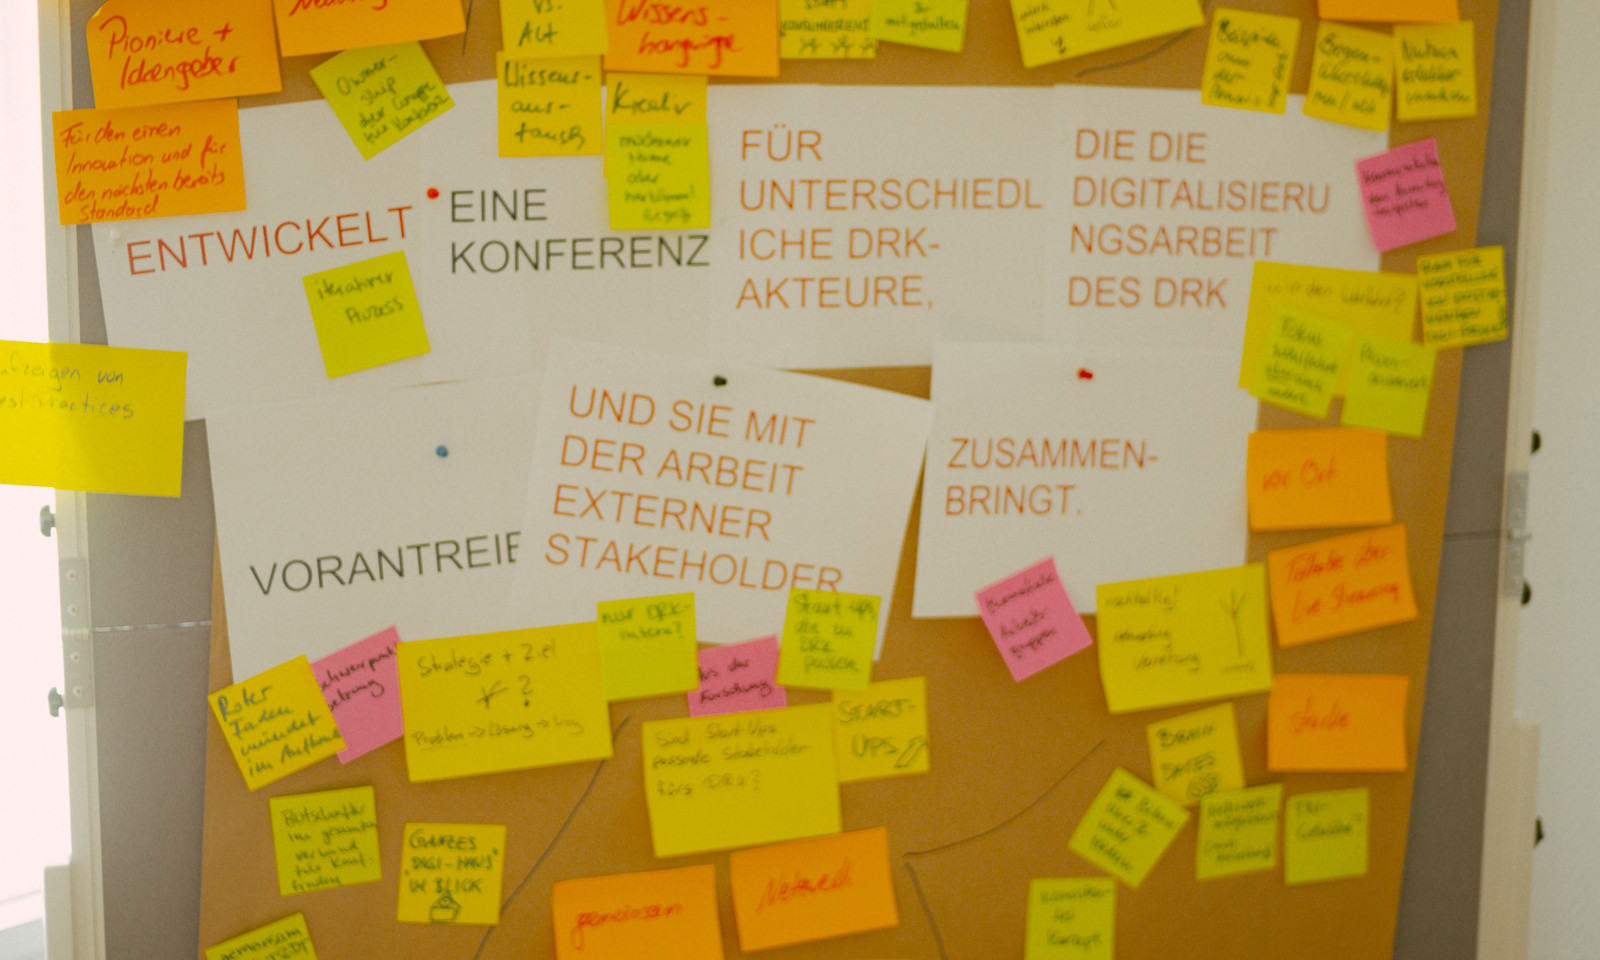 Design Thinking Pinnwand mit Ideen zum Vorantreiben der Digitalisierung